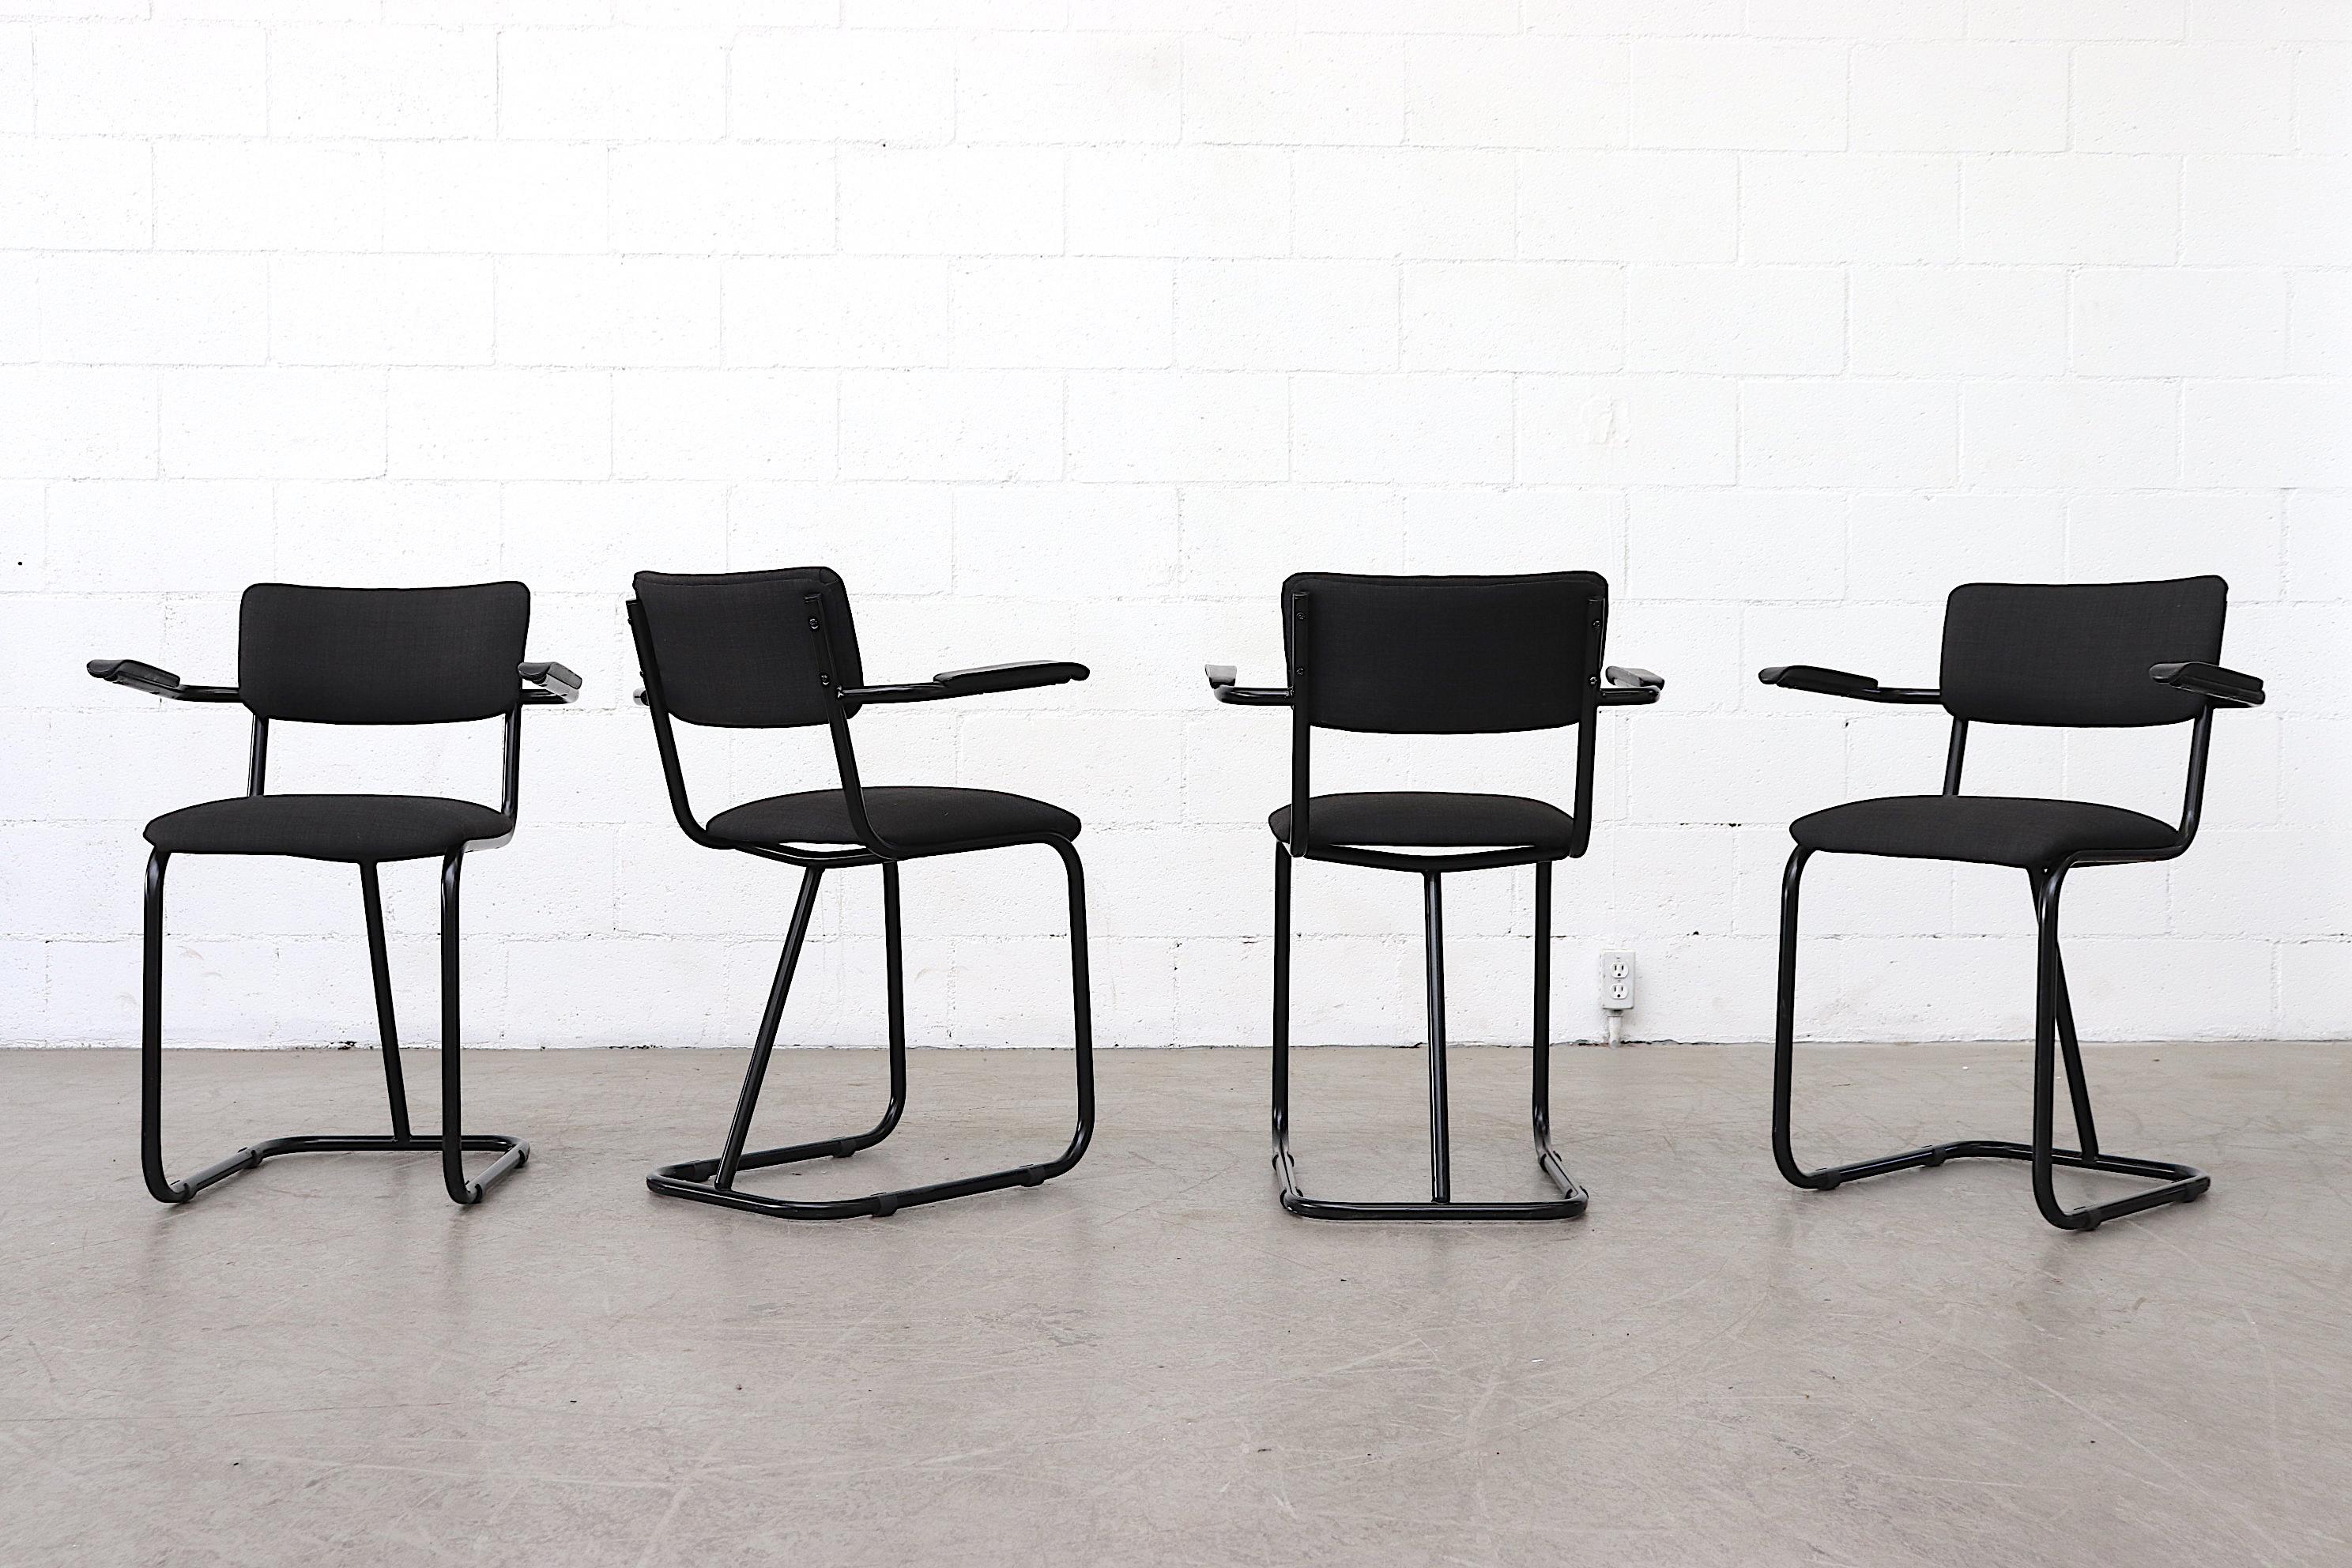 Fana Metaal produzierte Mitte des Jahrhunderts Stühle mit gepolsterten Metallrohrrahmen, die sich durch einen auffälligen mittleren Stützpfeiler und Armlehnen aus Acryl auszeichnen. Die Rahmen sind in gutem Zustand mit einigen altersgemäßen